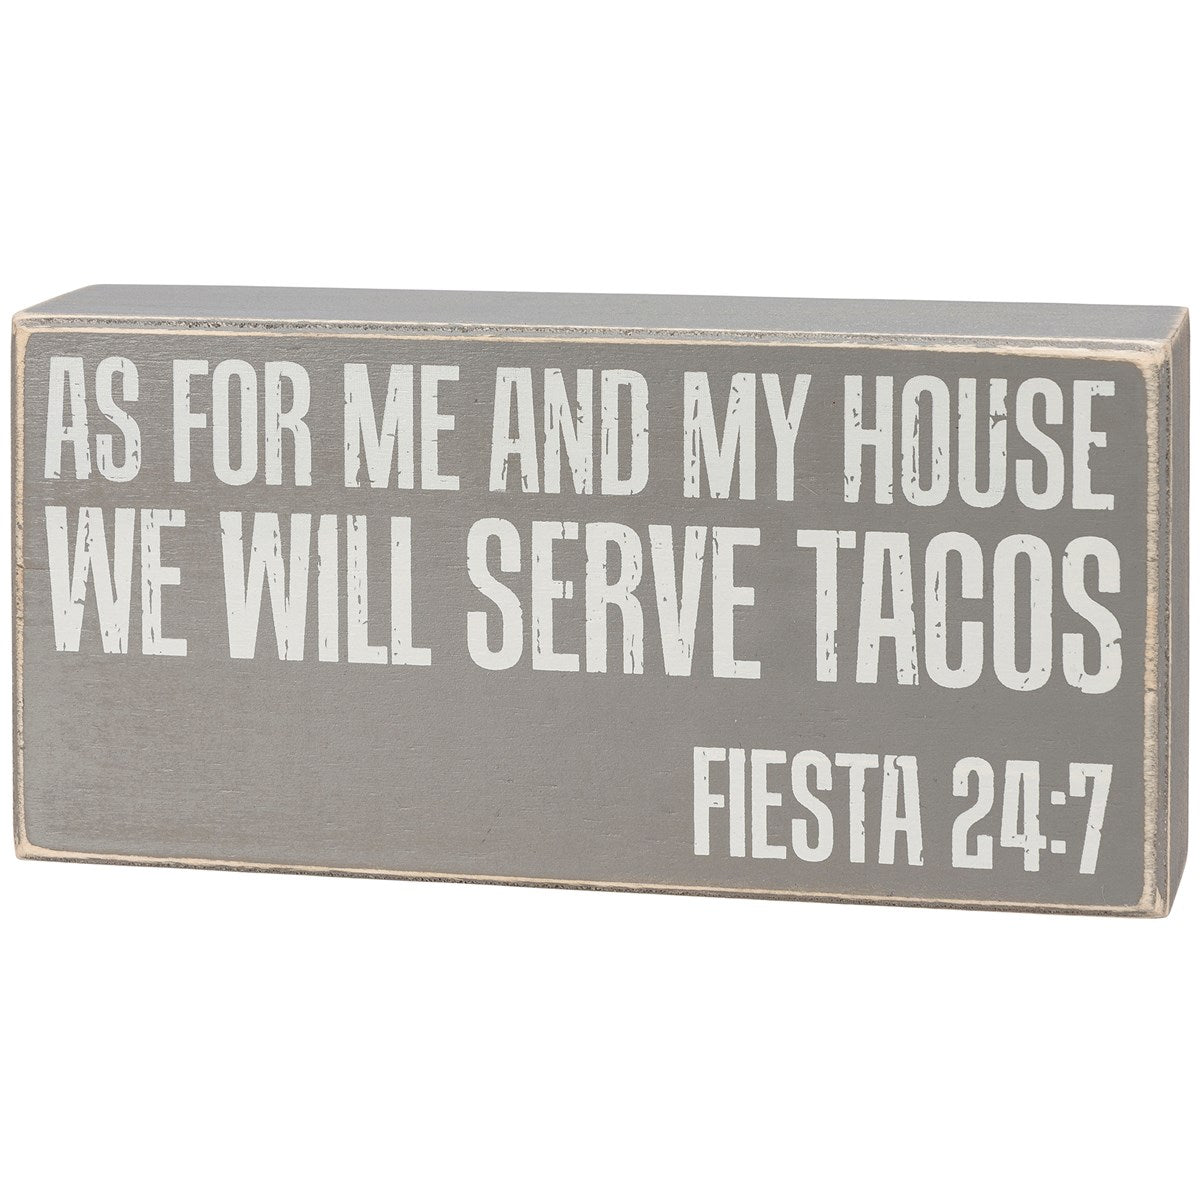 Serve Tacos Sign